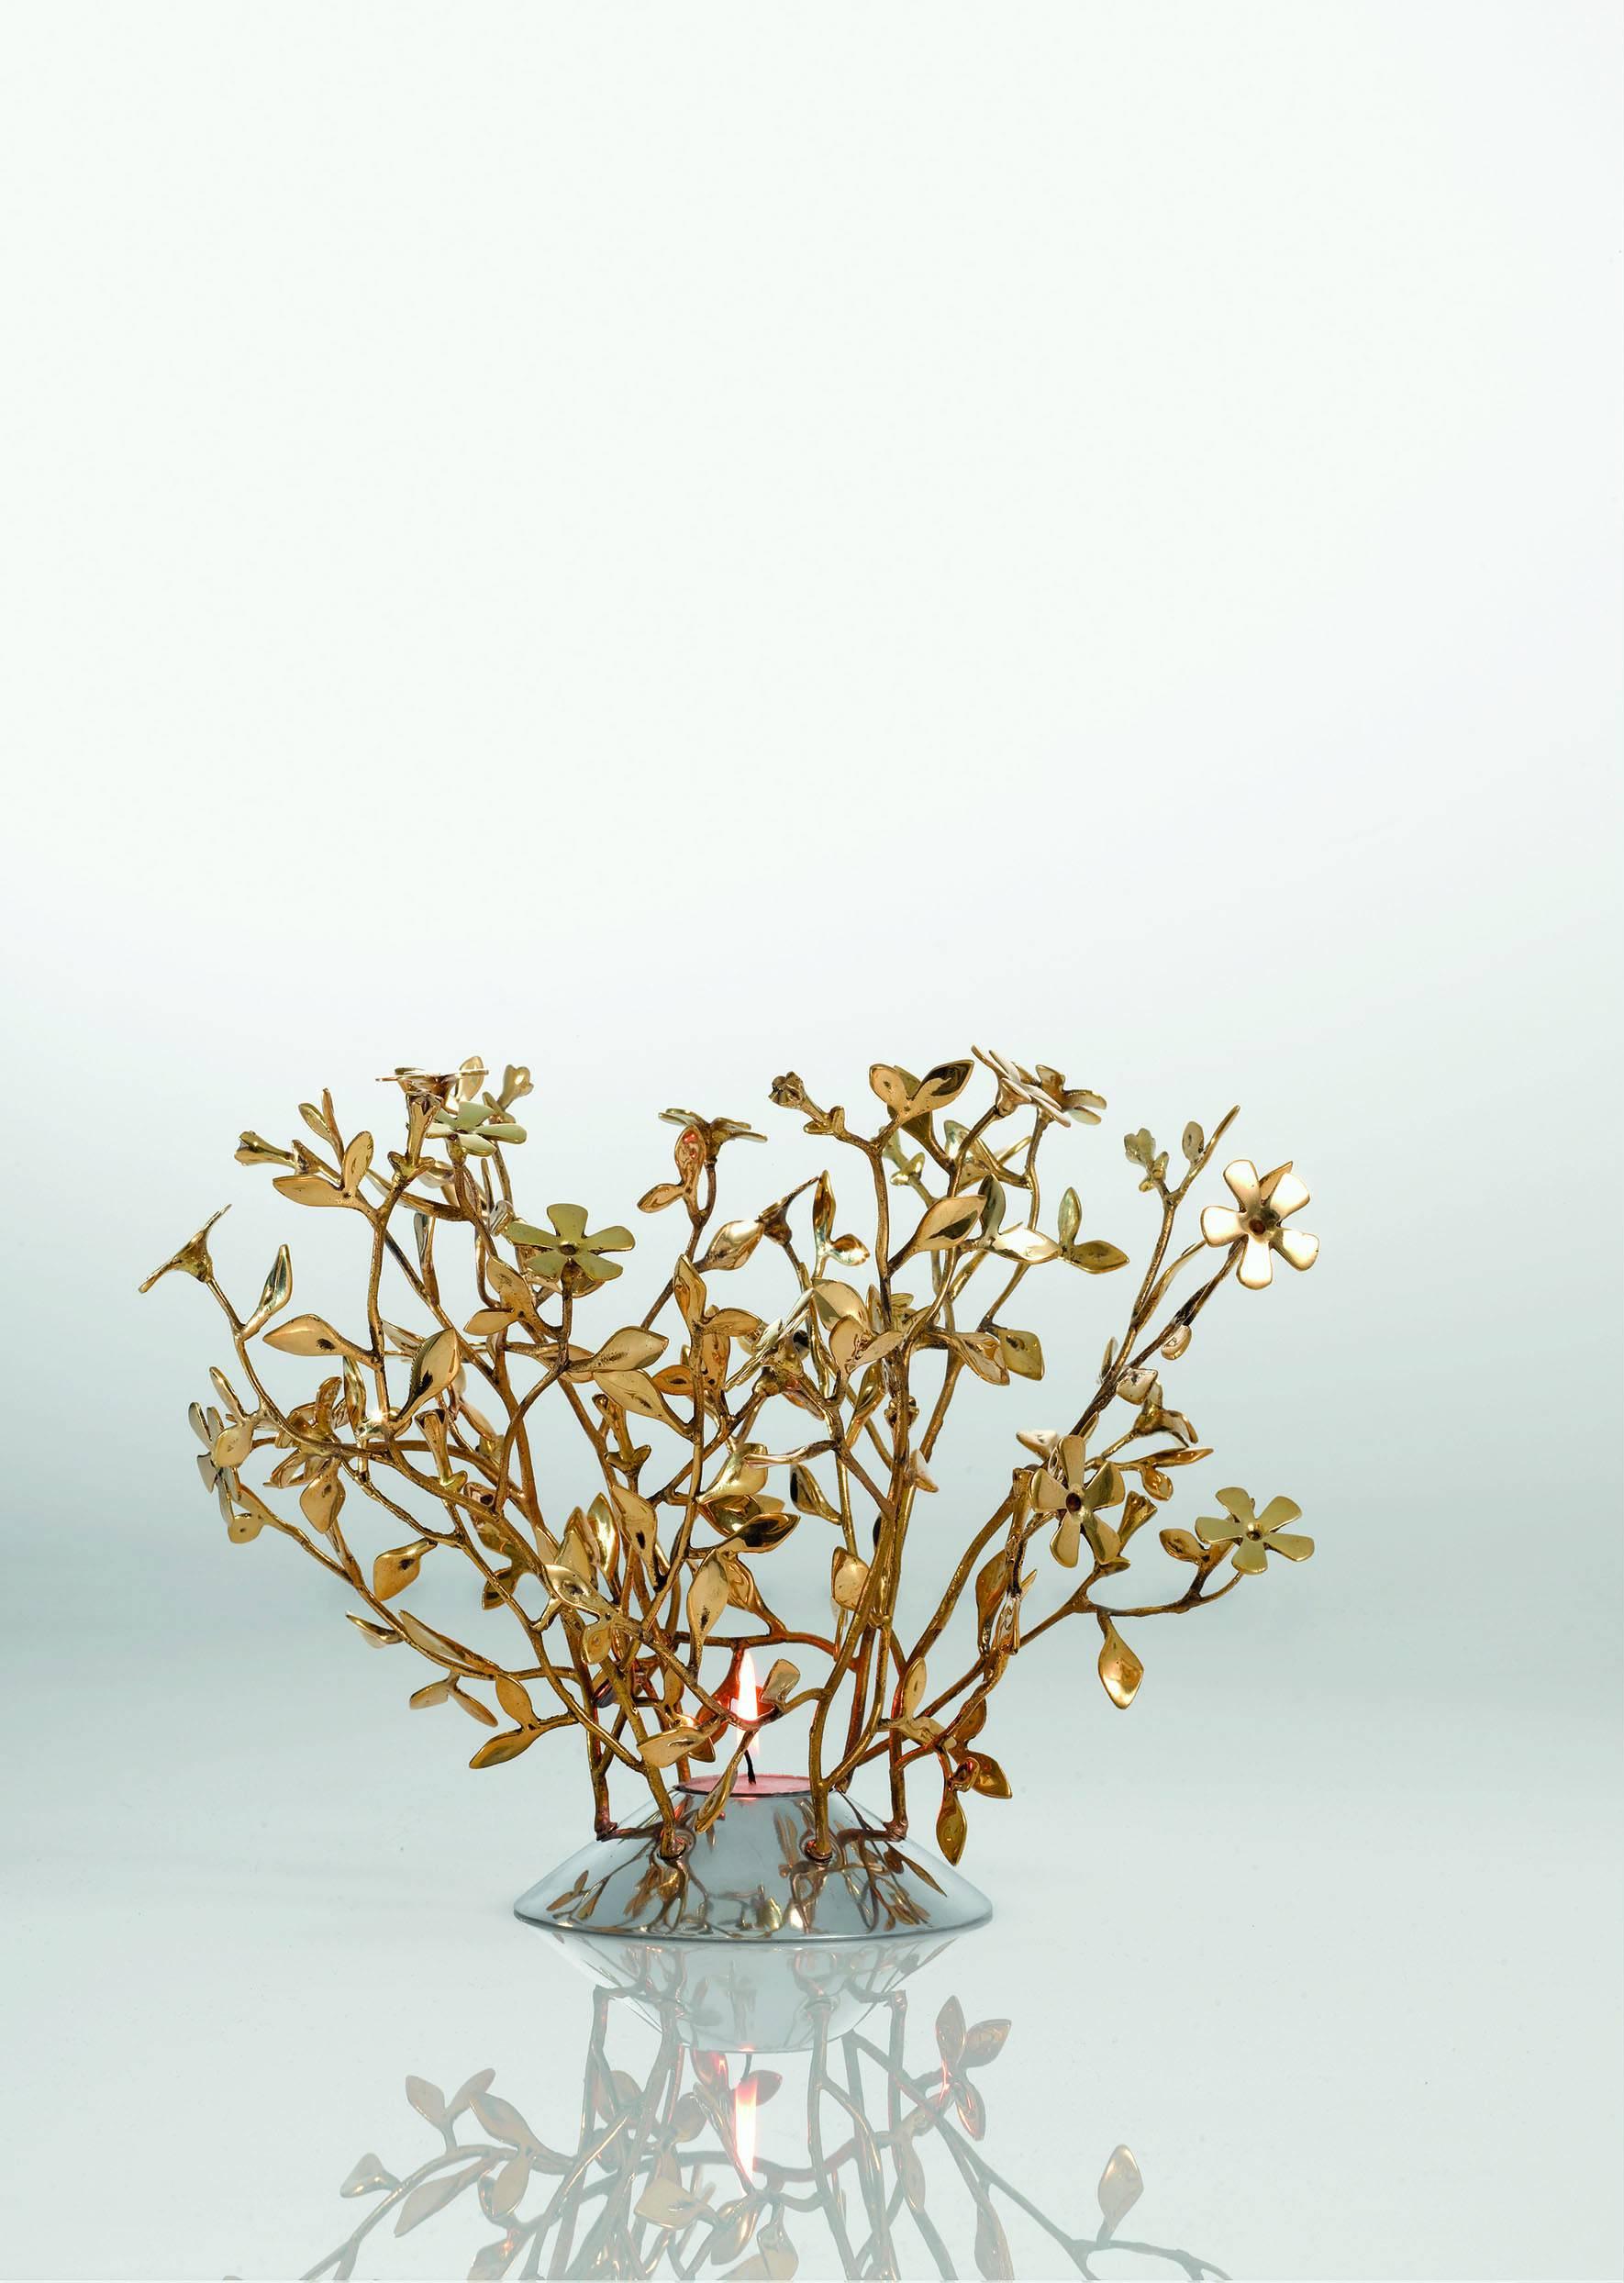 Une composition de fleurs ou de feuilles attachées ensemble avec une collection de petites branches. Ce sont les précieux centres de table en forme de bol créés par Mann Singh en laiton argenté.

Mann Singh vient de loin, du pays des Sikhs, dans le